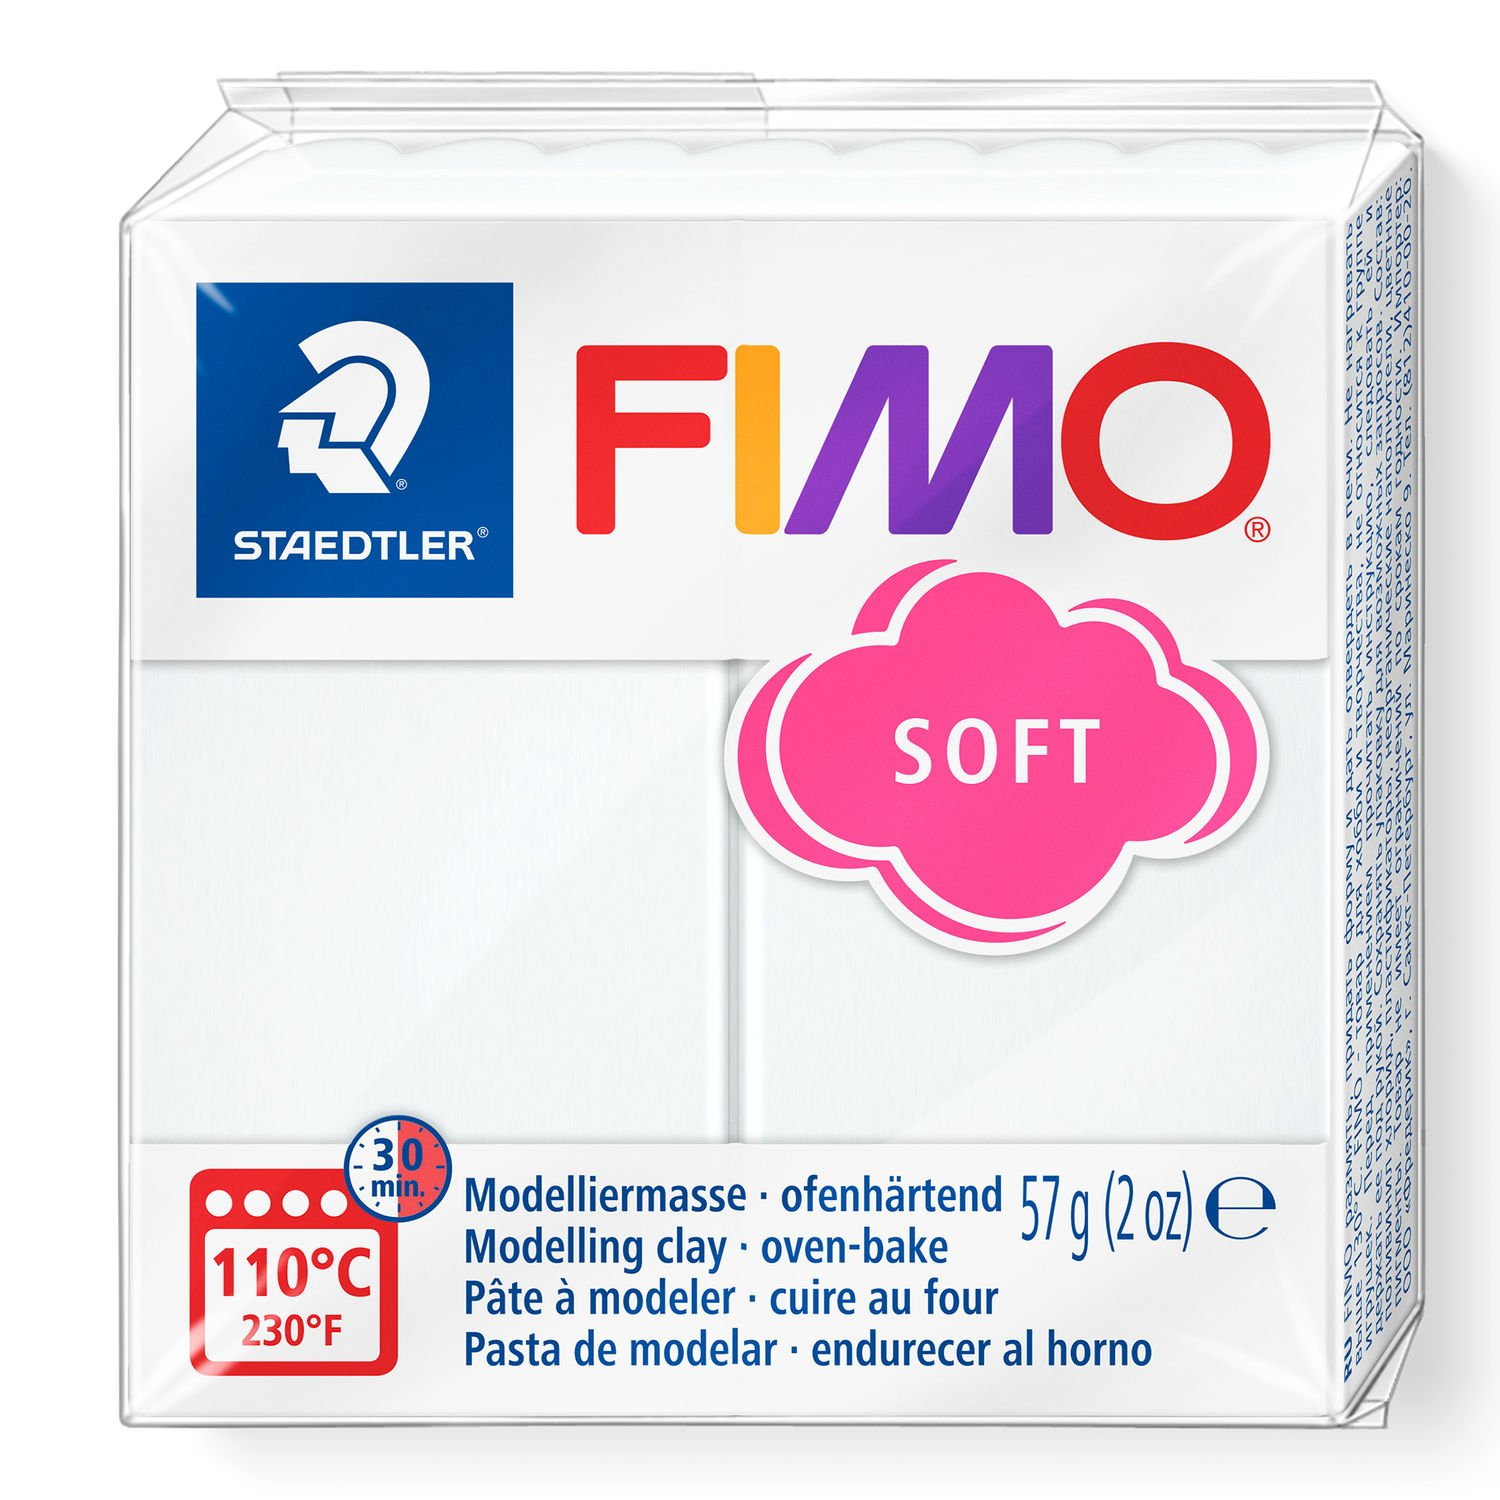 STAEDTLER FIMO 8020 - Modellierton - Weiß - 1 Stück(e) - 1 Farben - 110 °C - 30 min